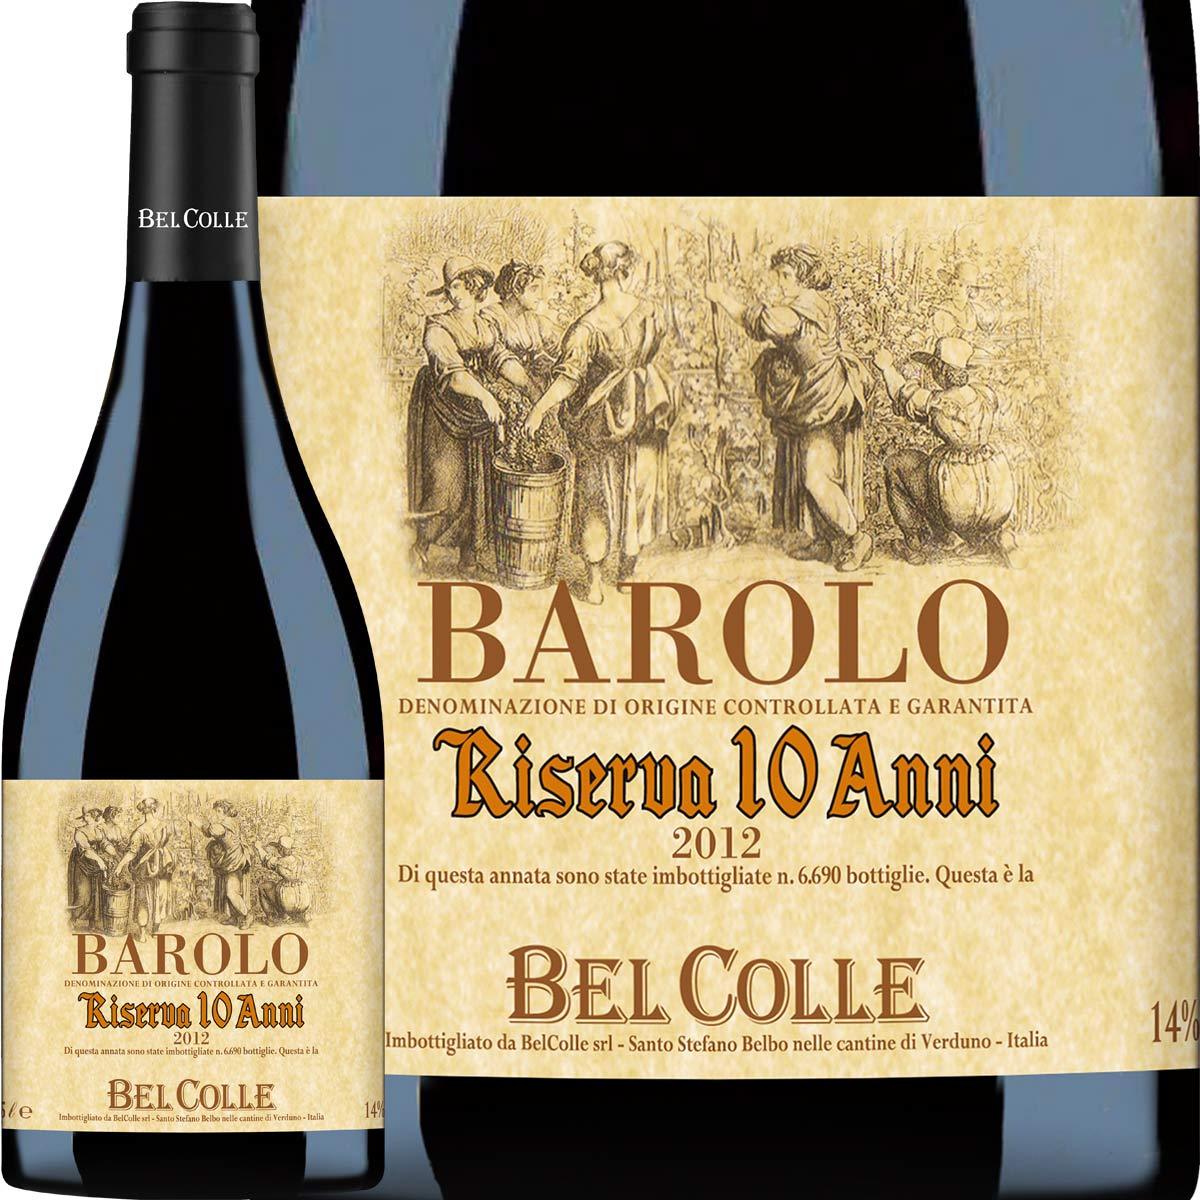 赤ワイン イタリア wine 750ml Italy Barolo ベルコッレ・バローロ・リゼルヴァ・10 アンニ 2012 ミディアム寄りのフルボディ  辛口 ピエモンテ 京橋ワイン 赤 白 セット wine - 通販 - PayPayモール